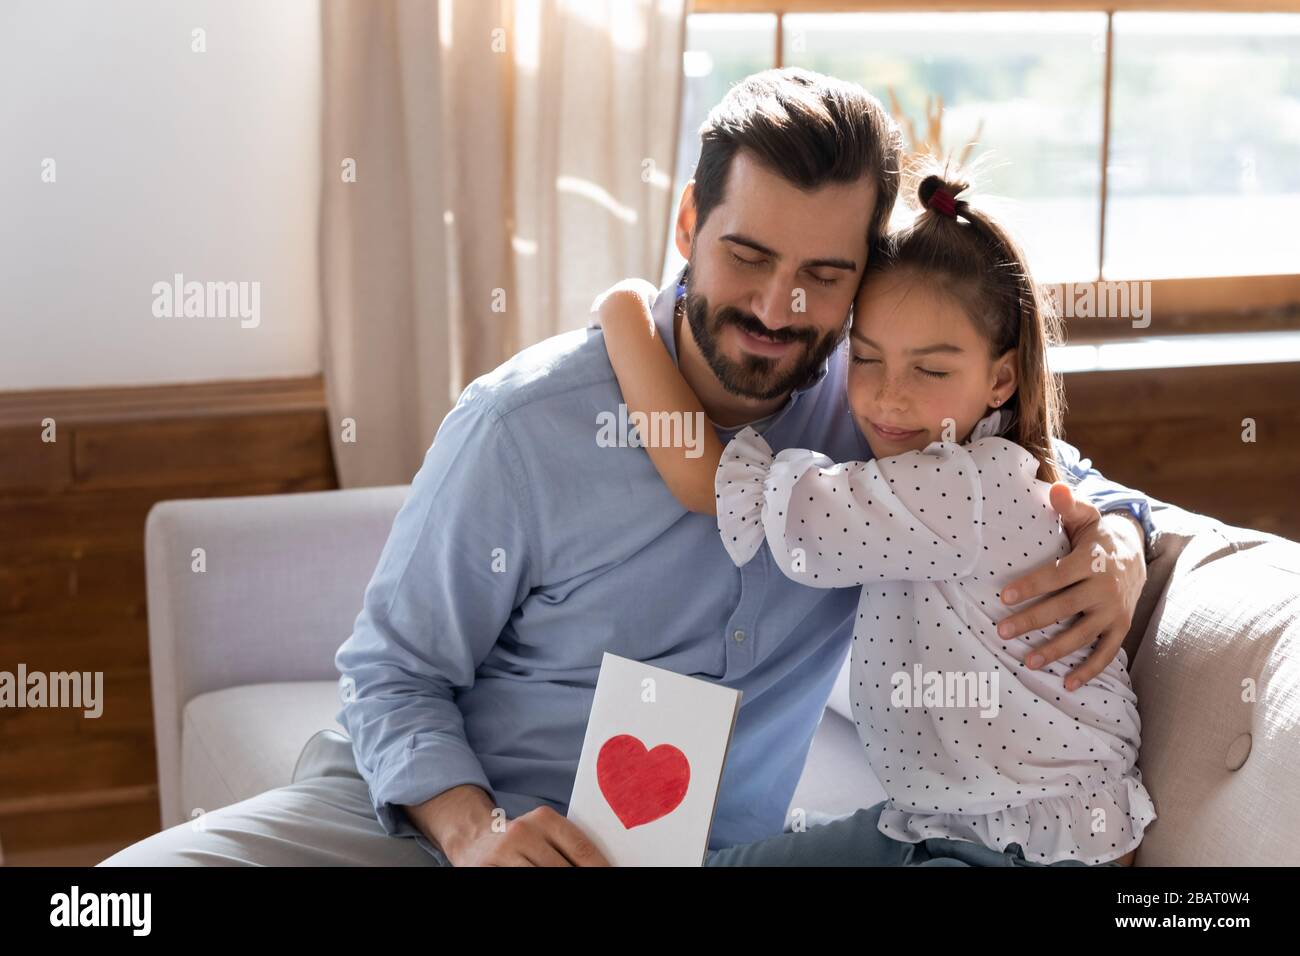 Der junge Vater umarmt die kleine Tochter und fühlt sich dankbar für die Glückwünsche zum Geburtstag. Stockfoto